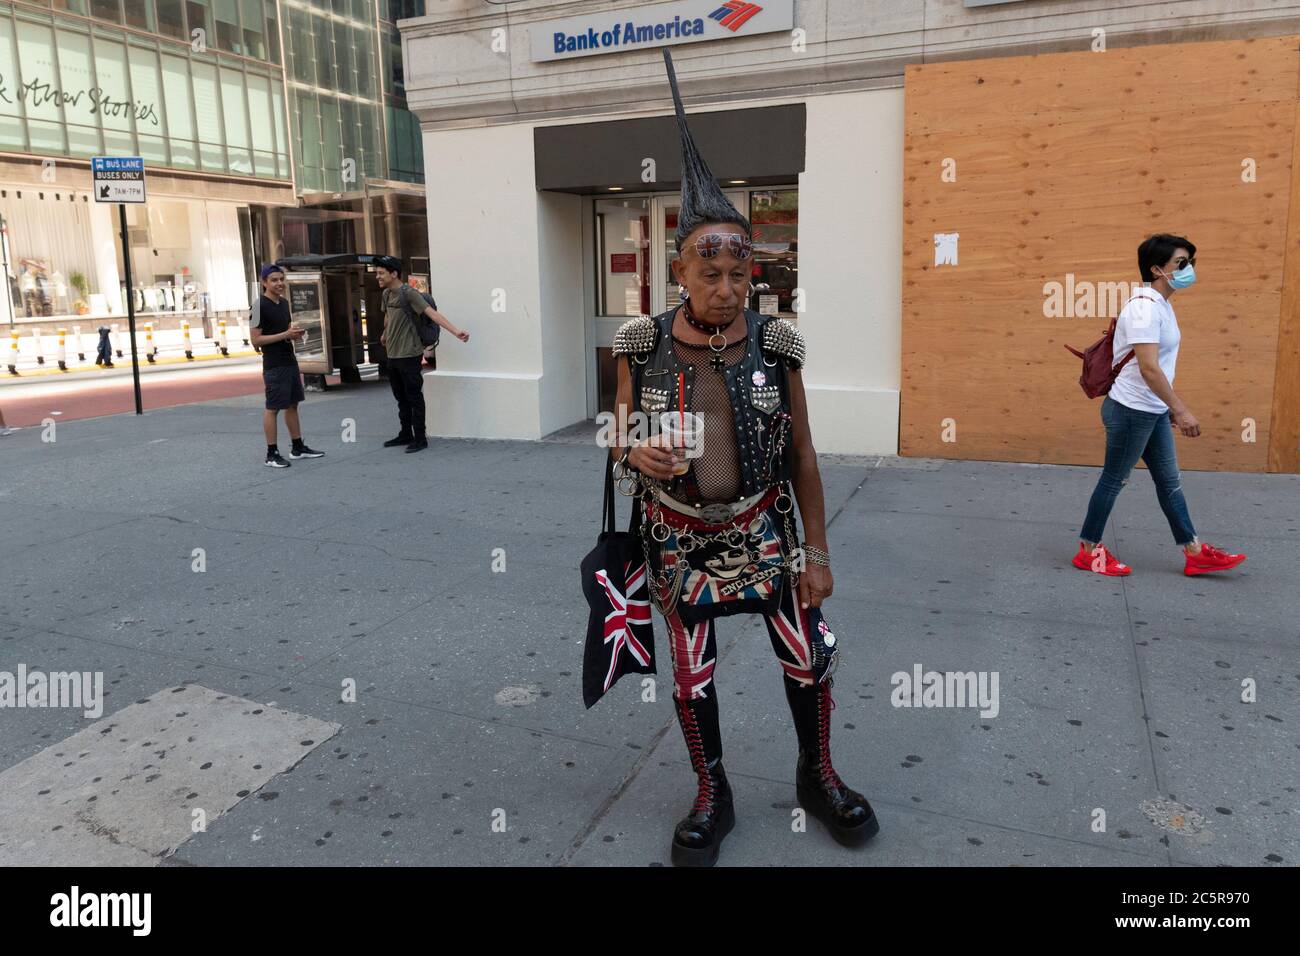 New York, New York, USA. Juli 2020. Ein Mann ist als britischer Punk Rocker in New York am 4. Juli gekleidet. Kredit: Brian Branch Price/ZUMA Wire/Alamy Live Nachrichten Stockfoto